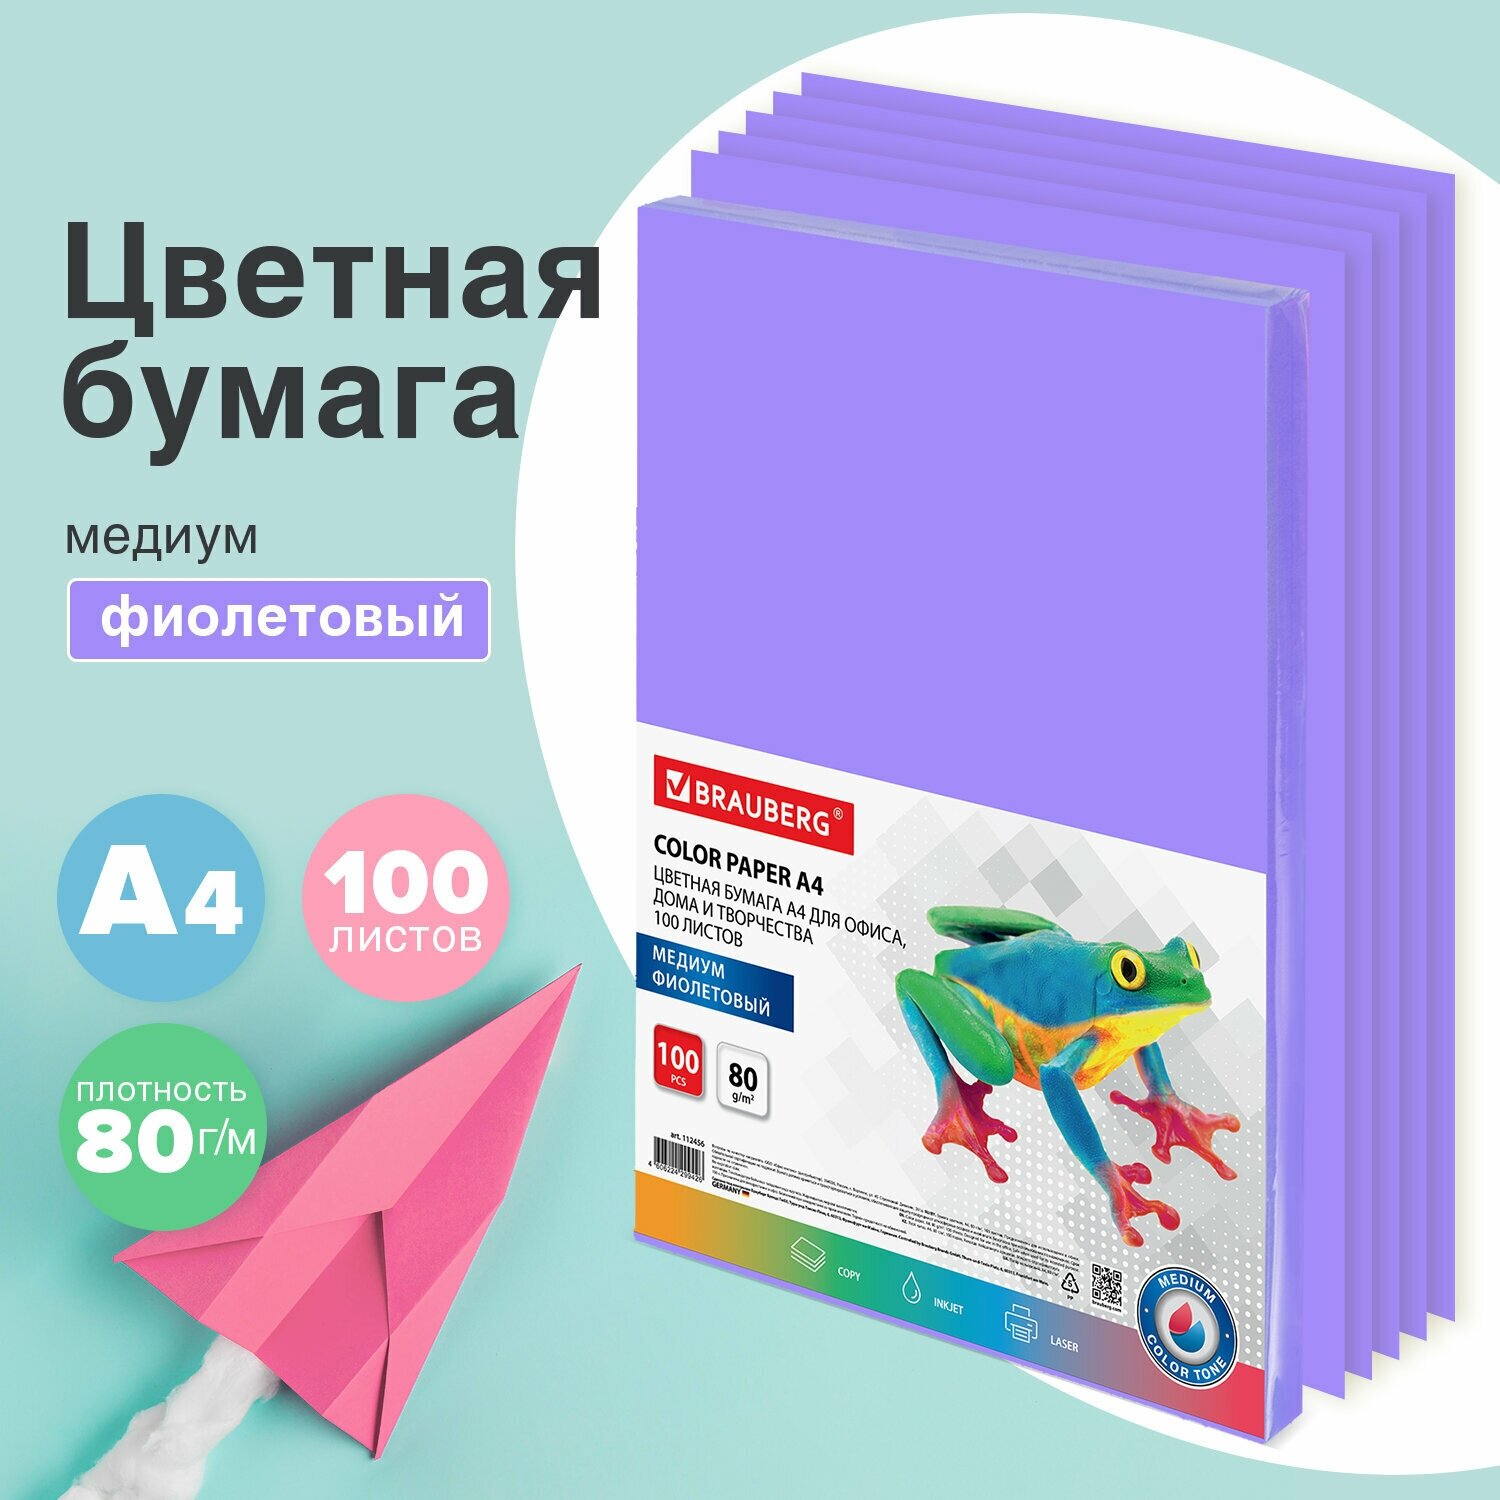 Бумага цветная для принтера офисная Brauberg, А4, 80 г/м2, 100 листов, медиум, фиолетовая, для офисной техники, 112456